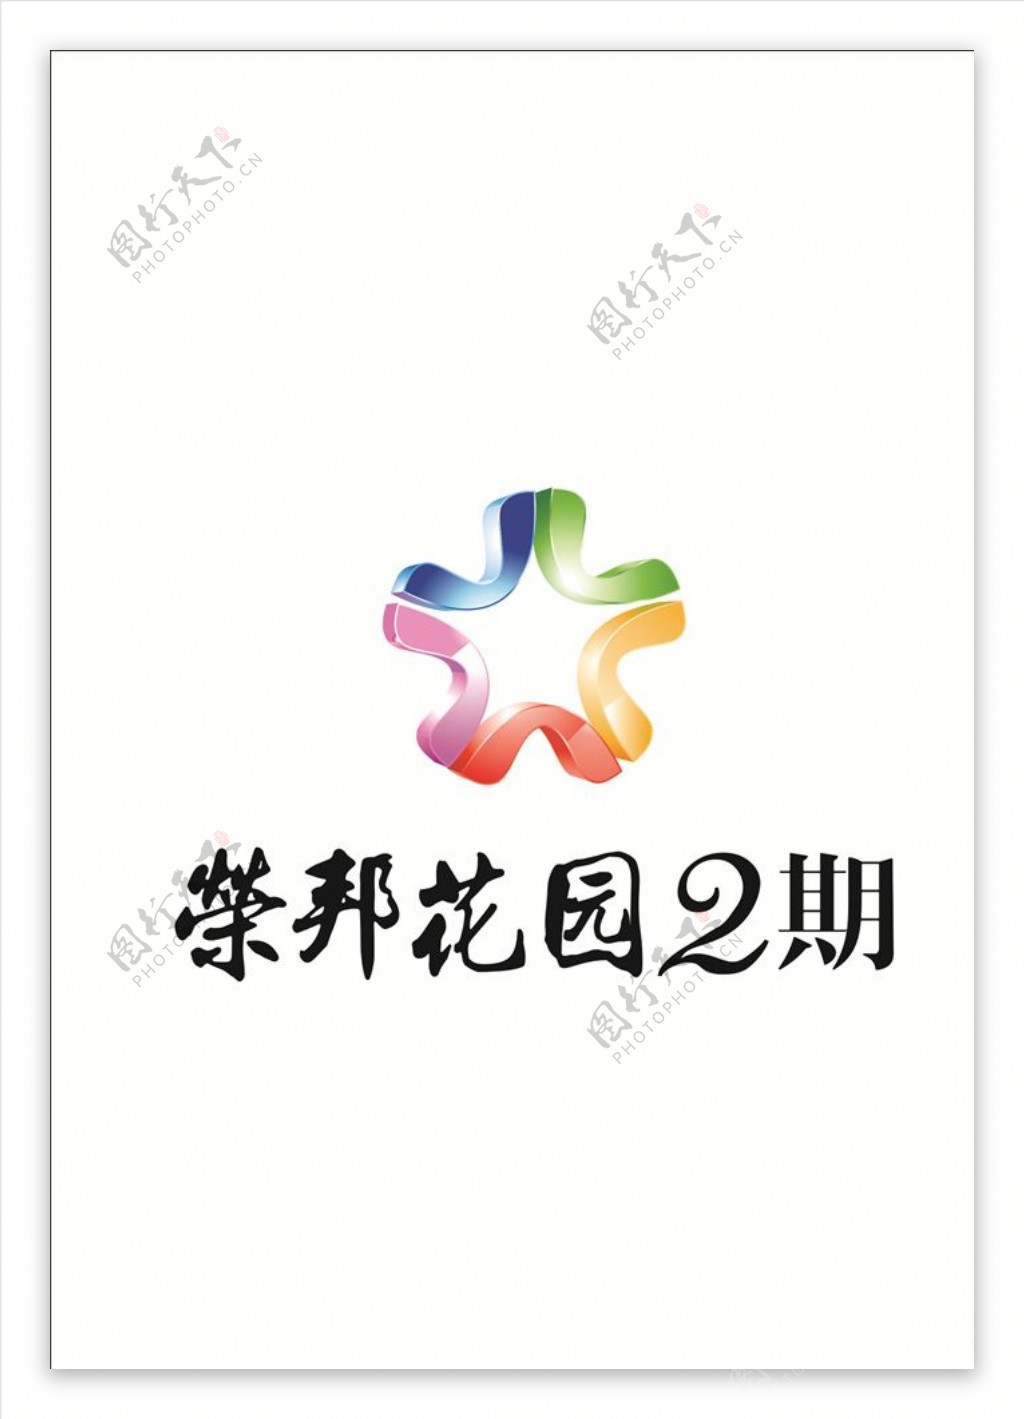 地产荣邦花园2期logo